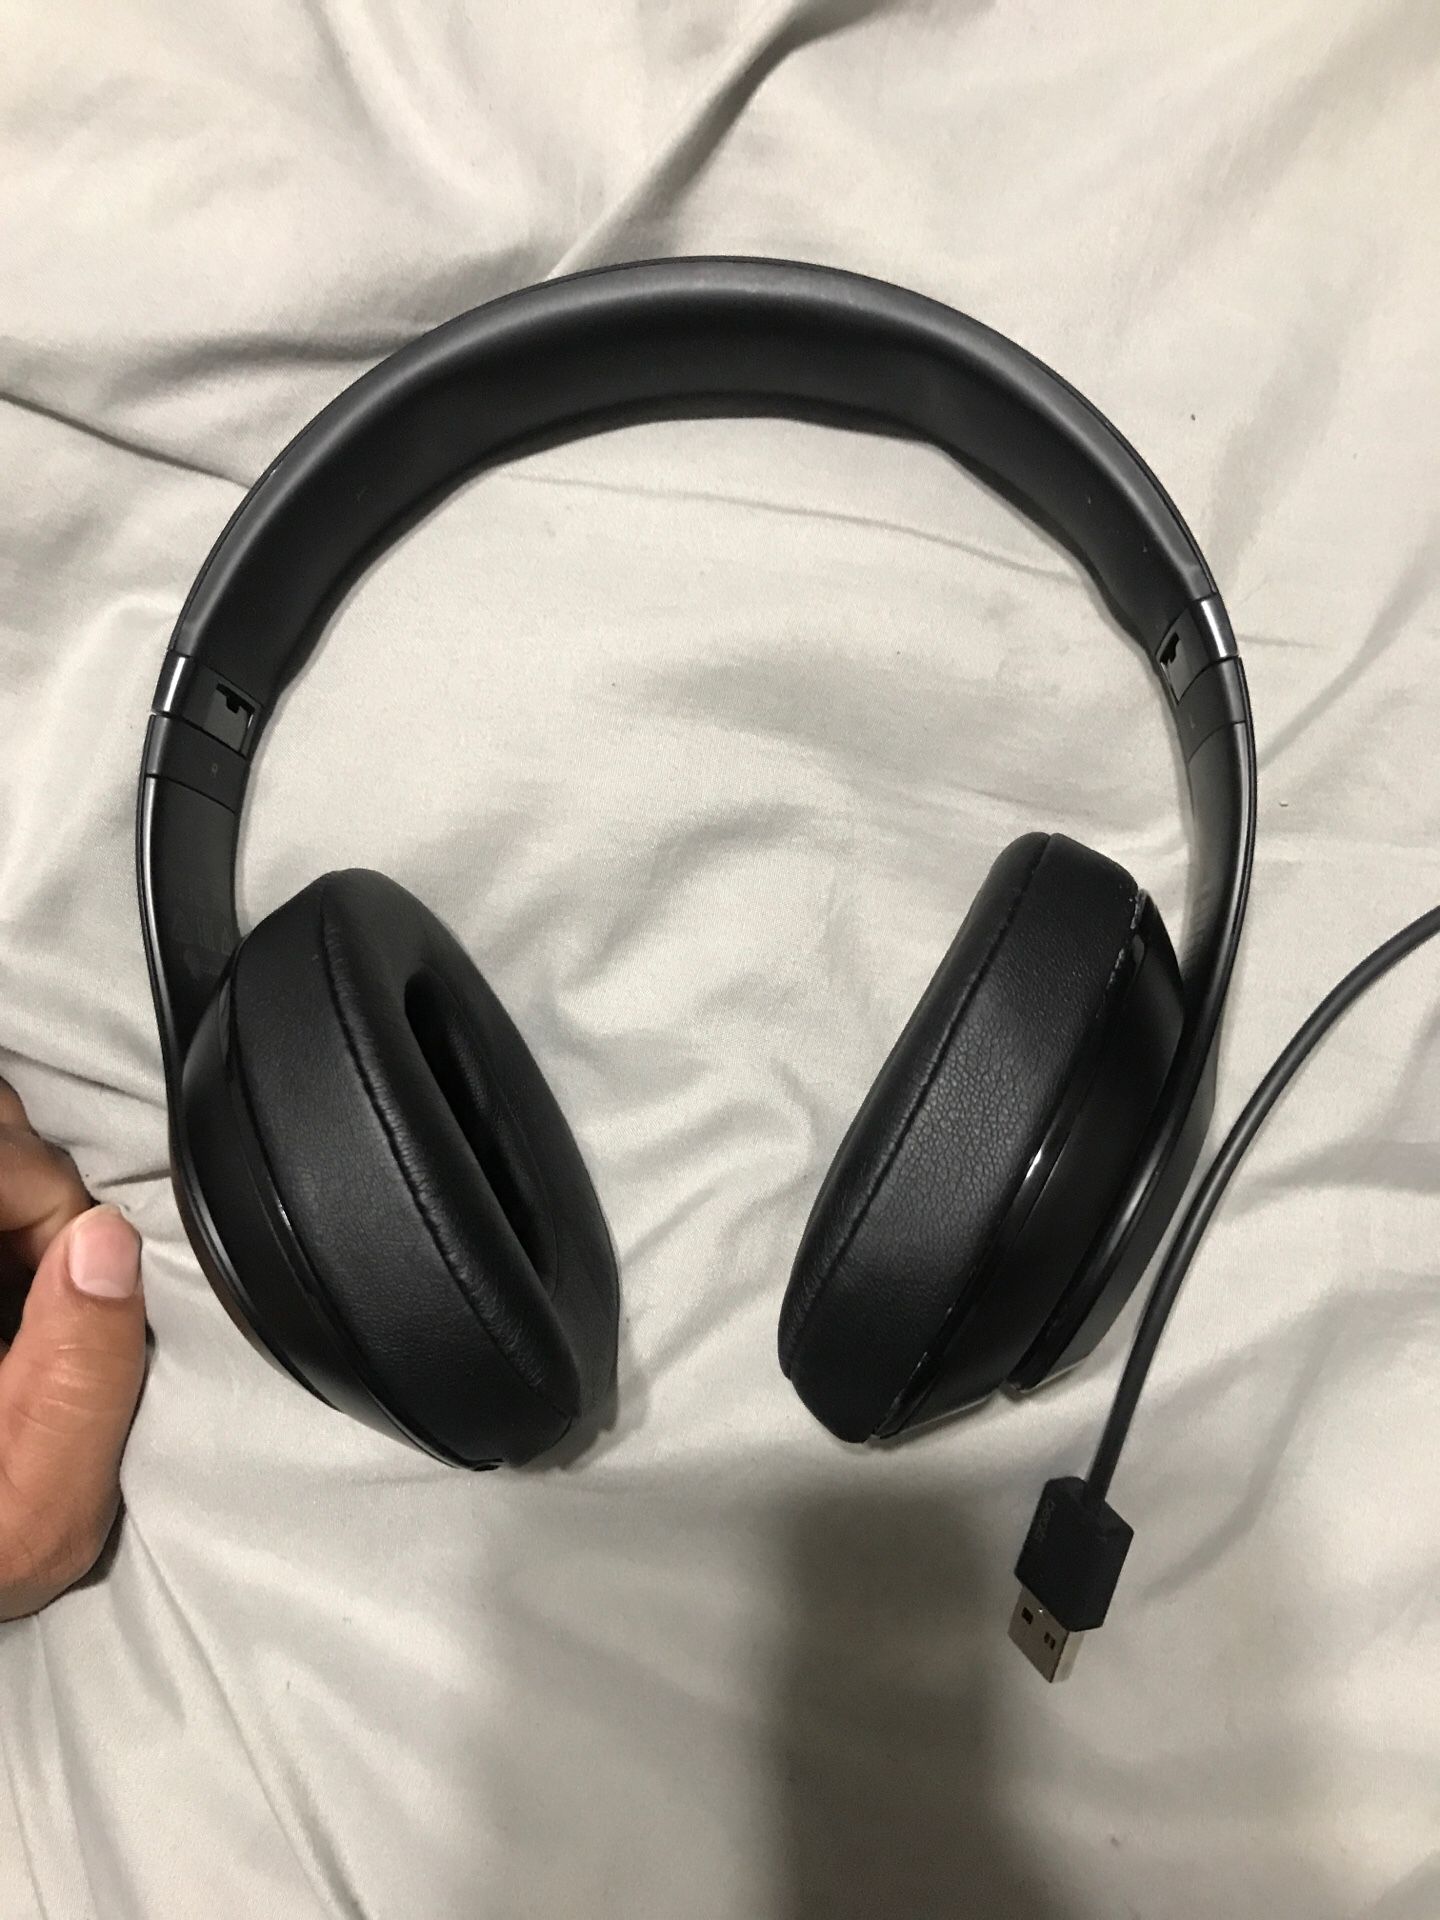 Beats Studio Headphones